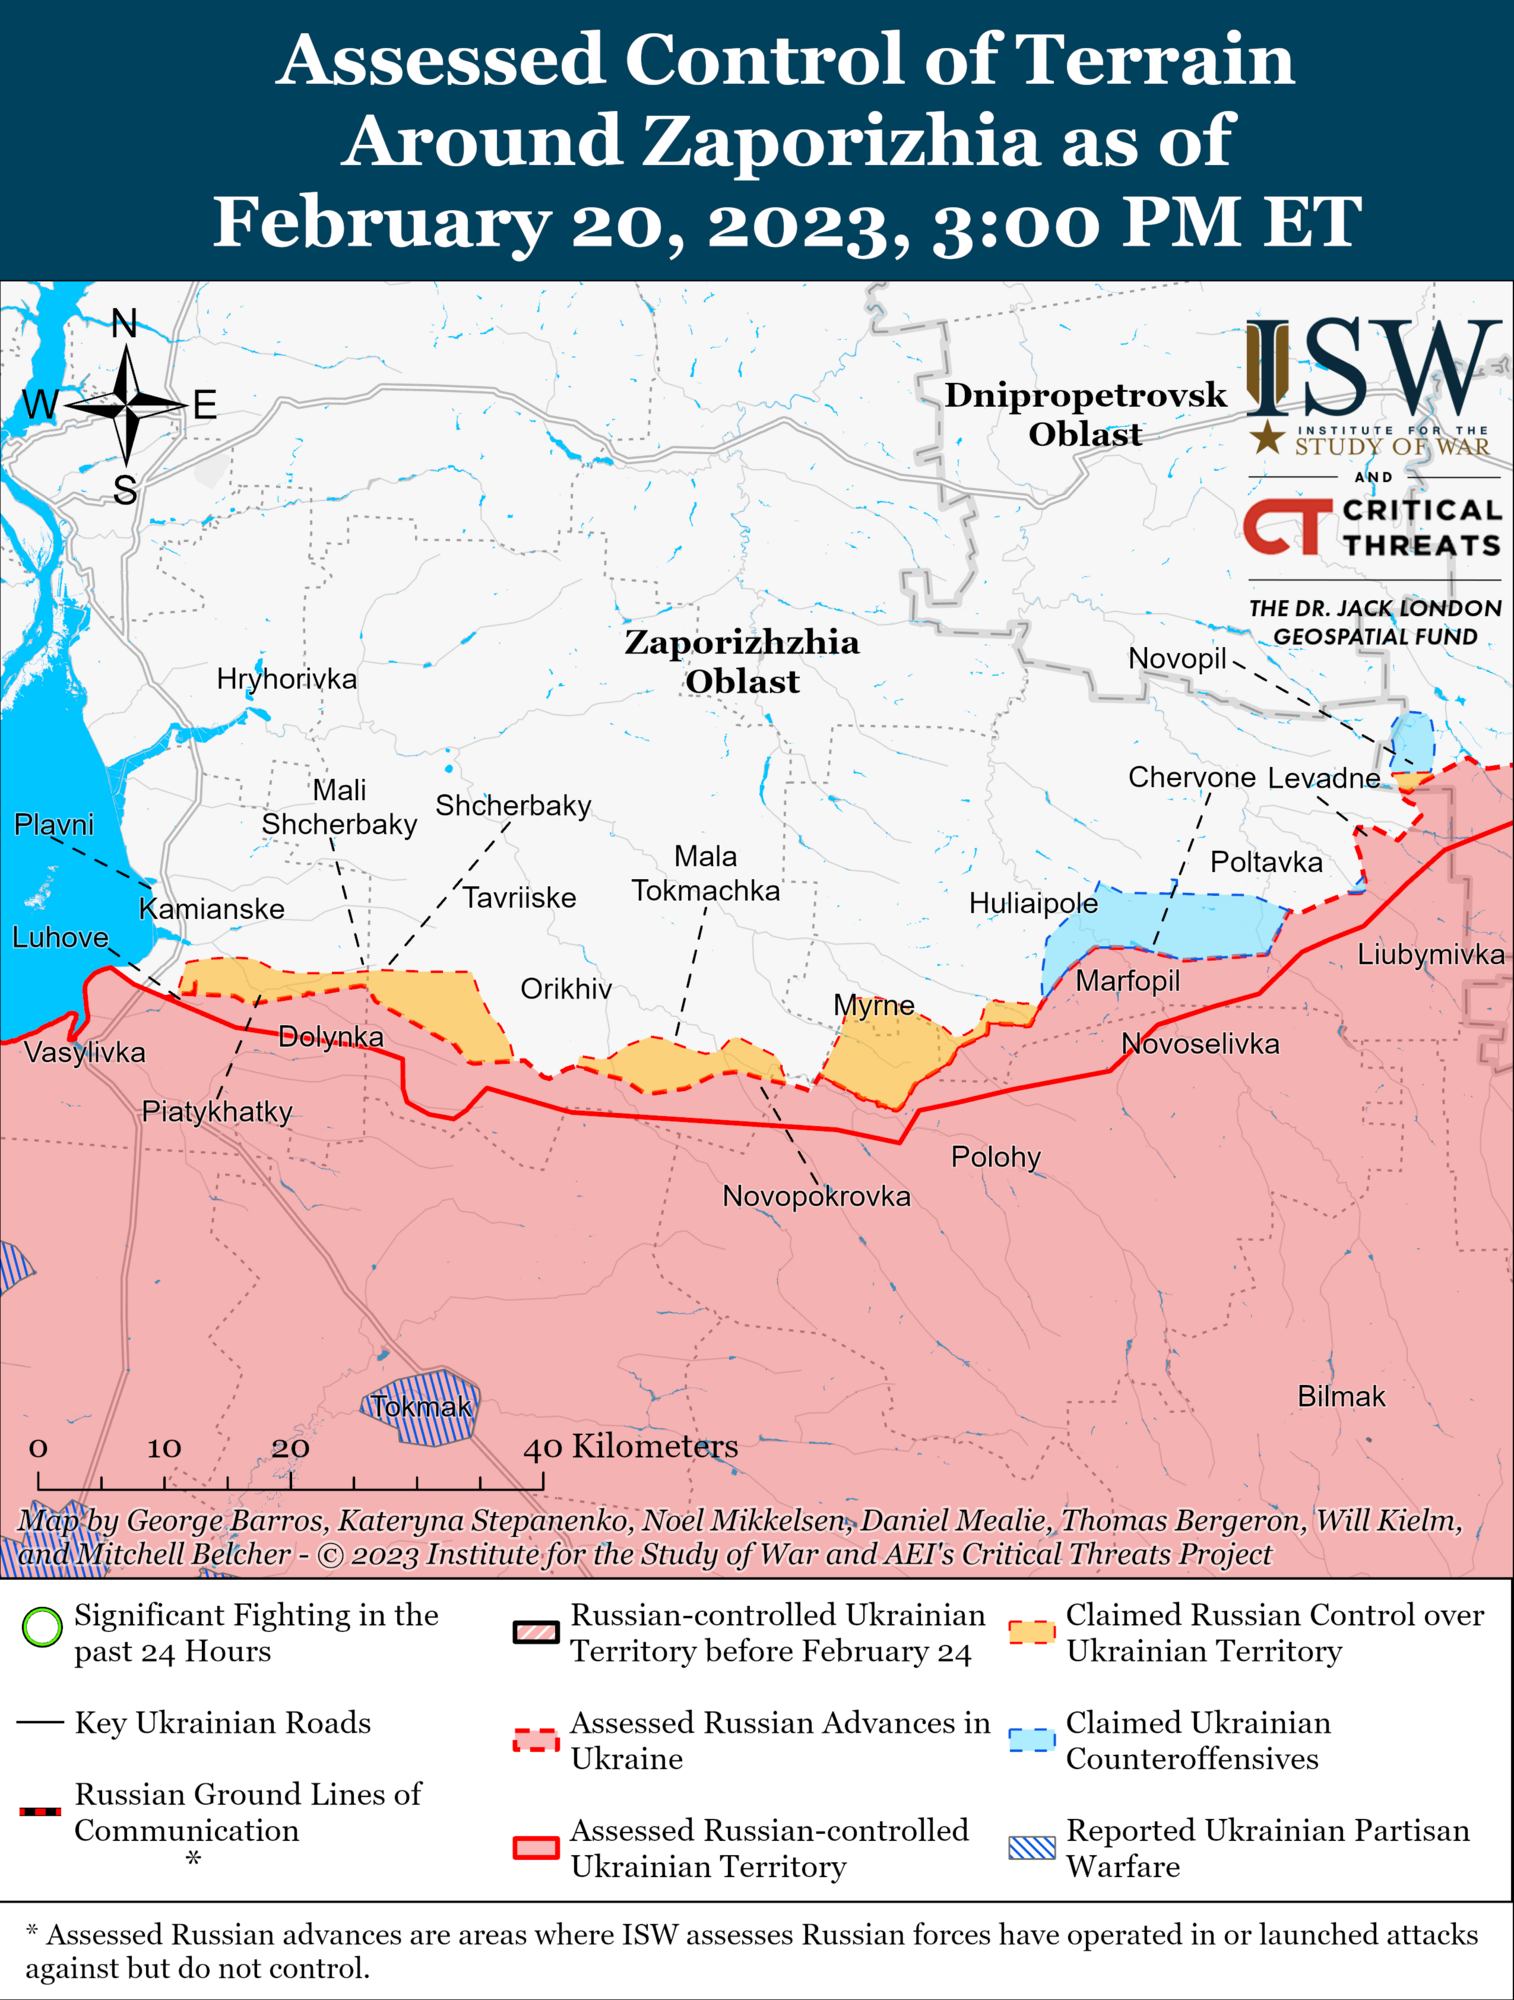 Росії бракує сил на фронті, Україна може захопити ініціативу: в ISW дали прогноз щодо ходу війни в 2023 році